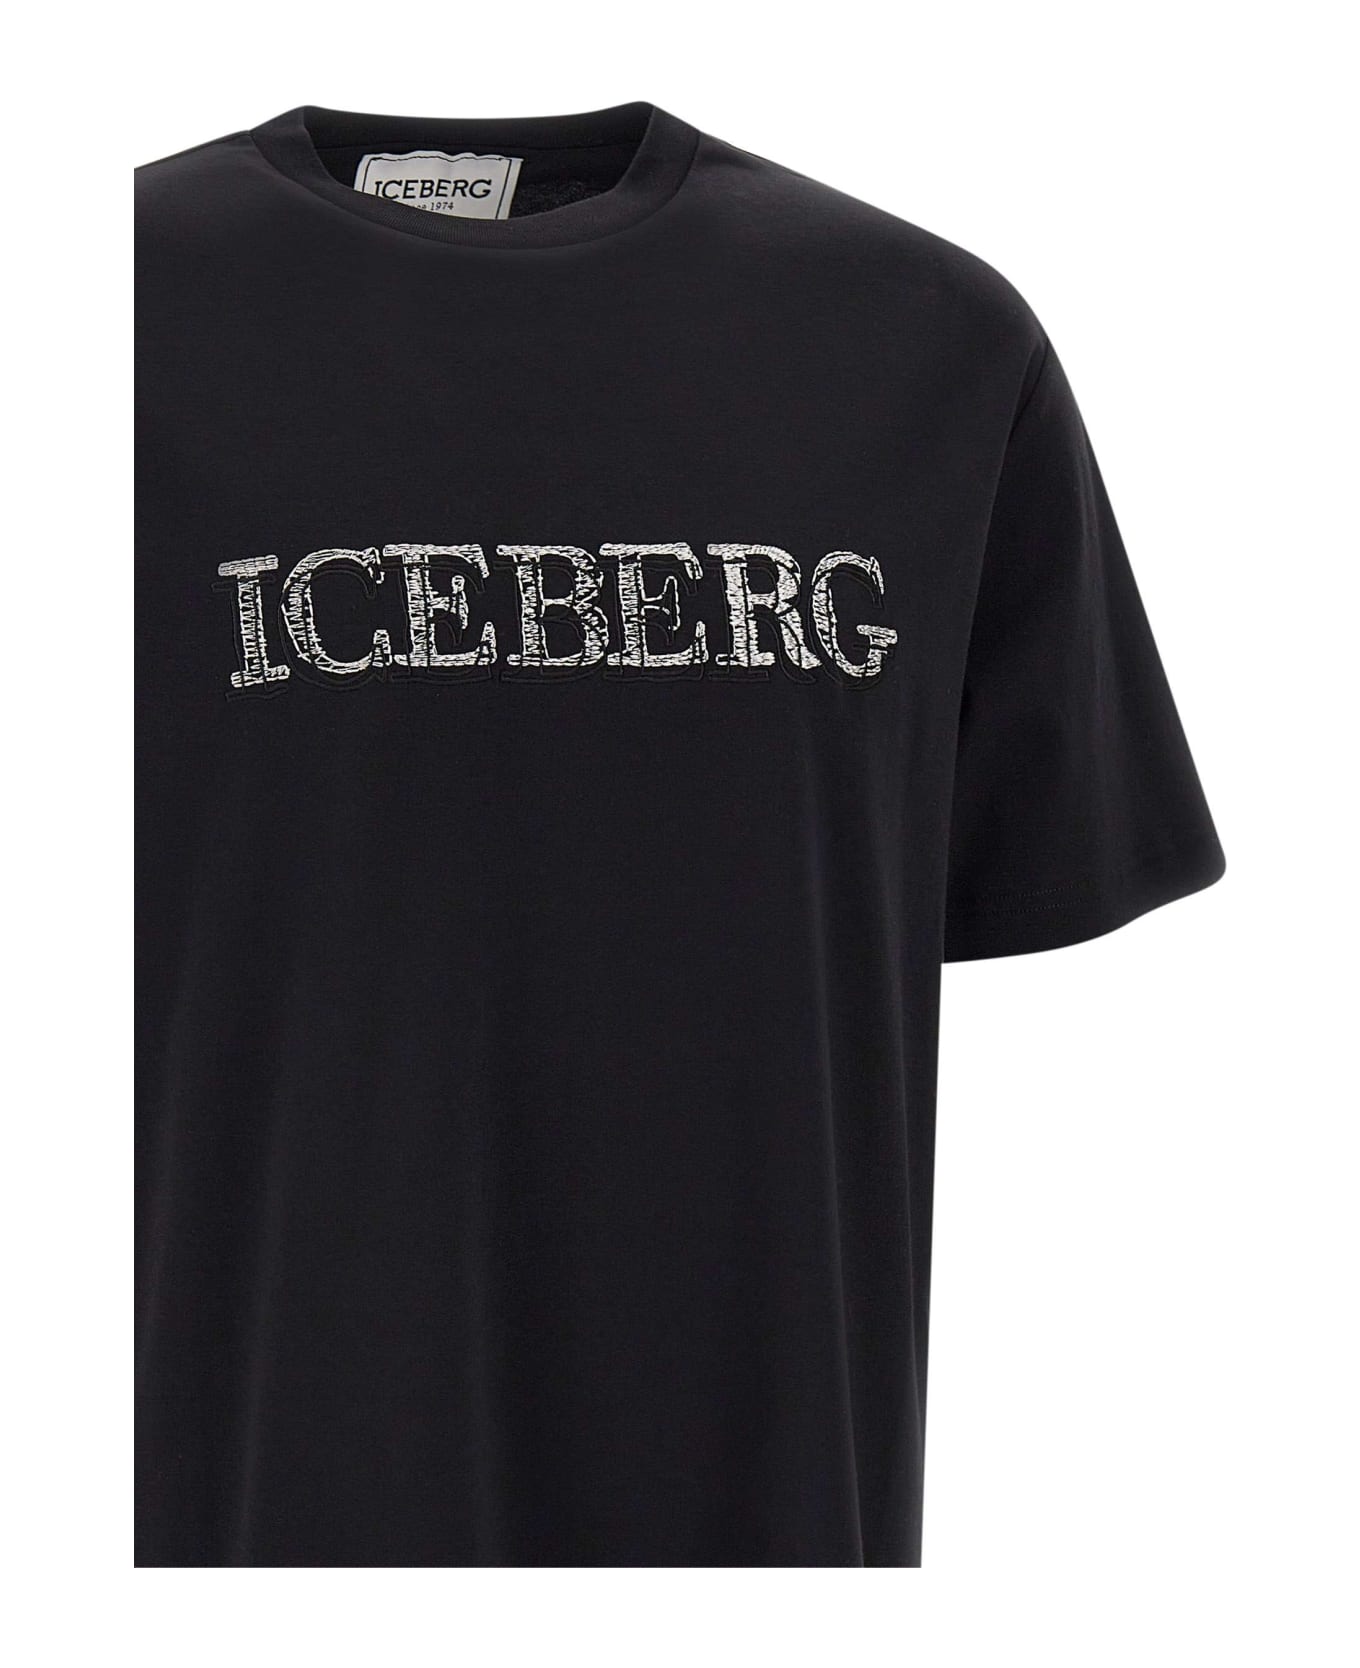 Iceberg Eco-sustainable Cotton T-shirt - BLACK